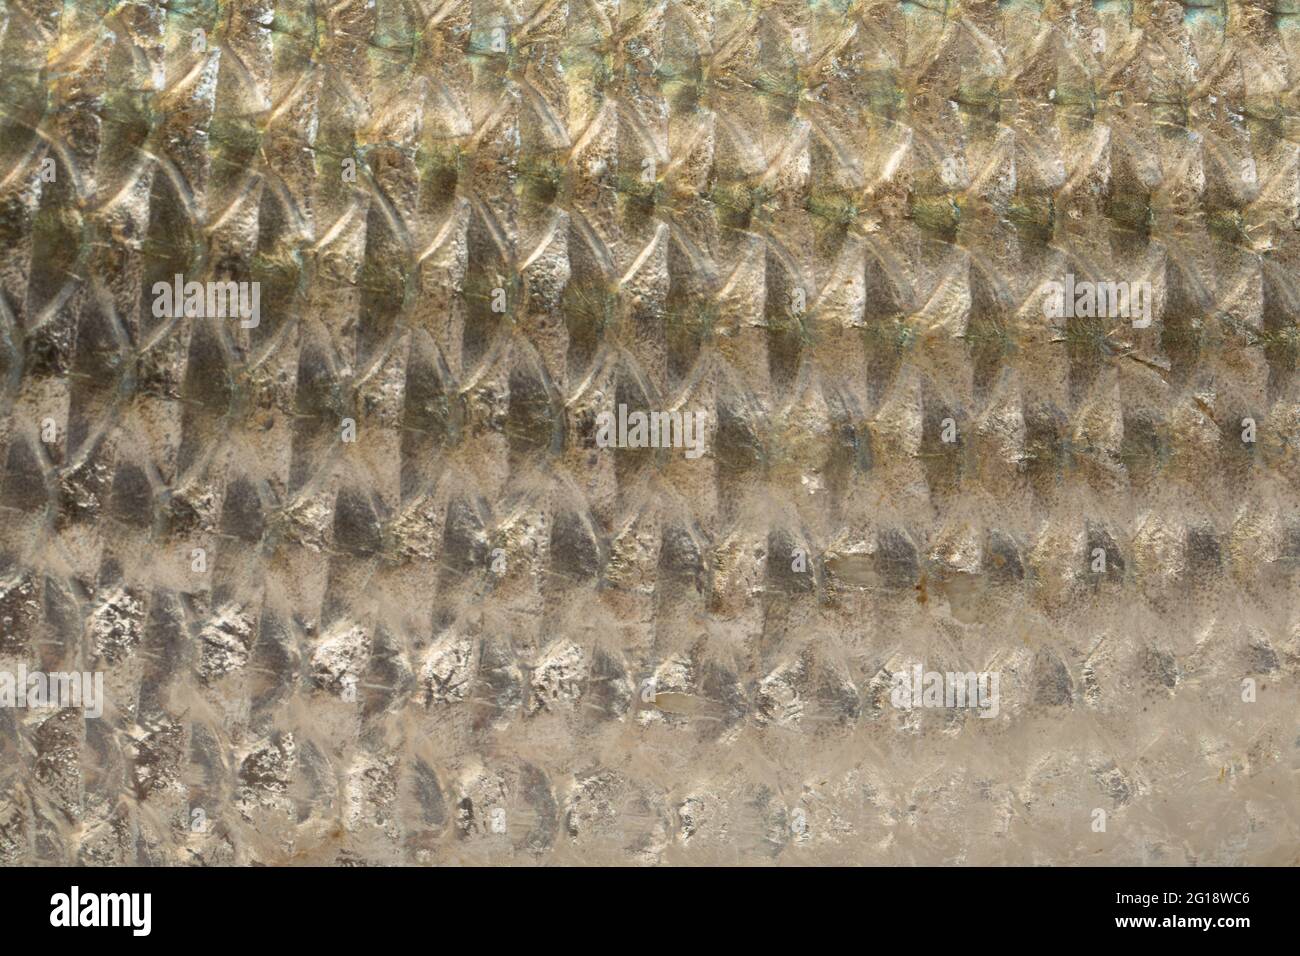 Süßwasserfisch-Rohu oder Rui , isoliert auf weißem strukturiertem Hintergrund Stockfoto